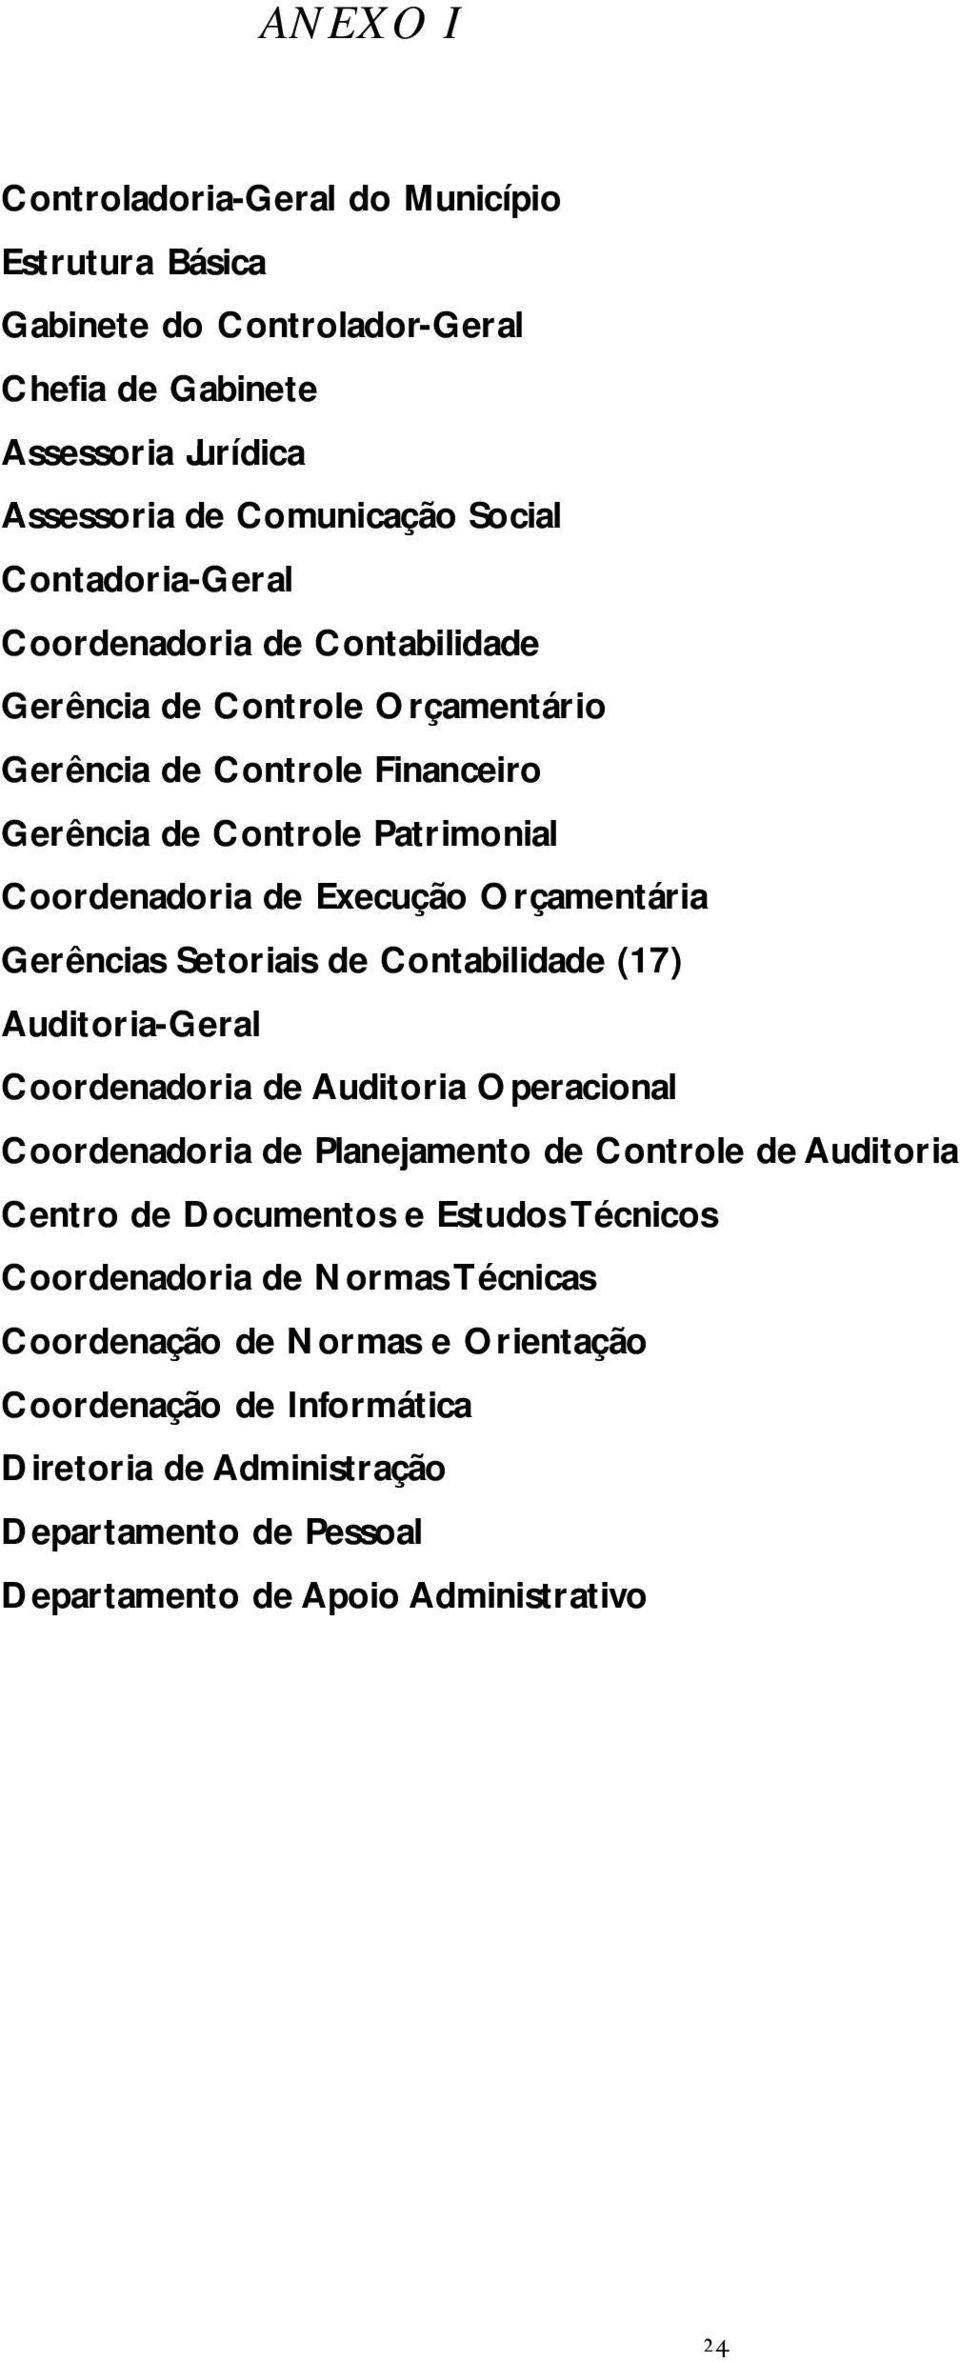 Setoriais de Contabilidade (17) Auditoria-Geral Coordenadoria de Auditoria Operacional Coordenadoria de Planejamento de Controle de Auditoria Centro de Documentos e Estudos